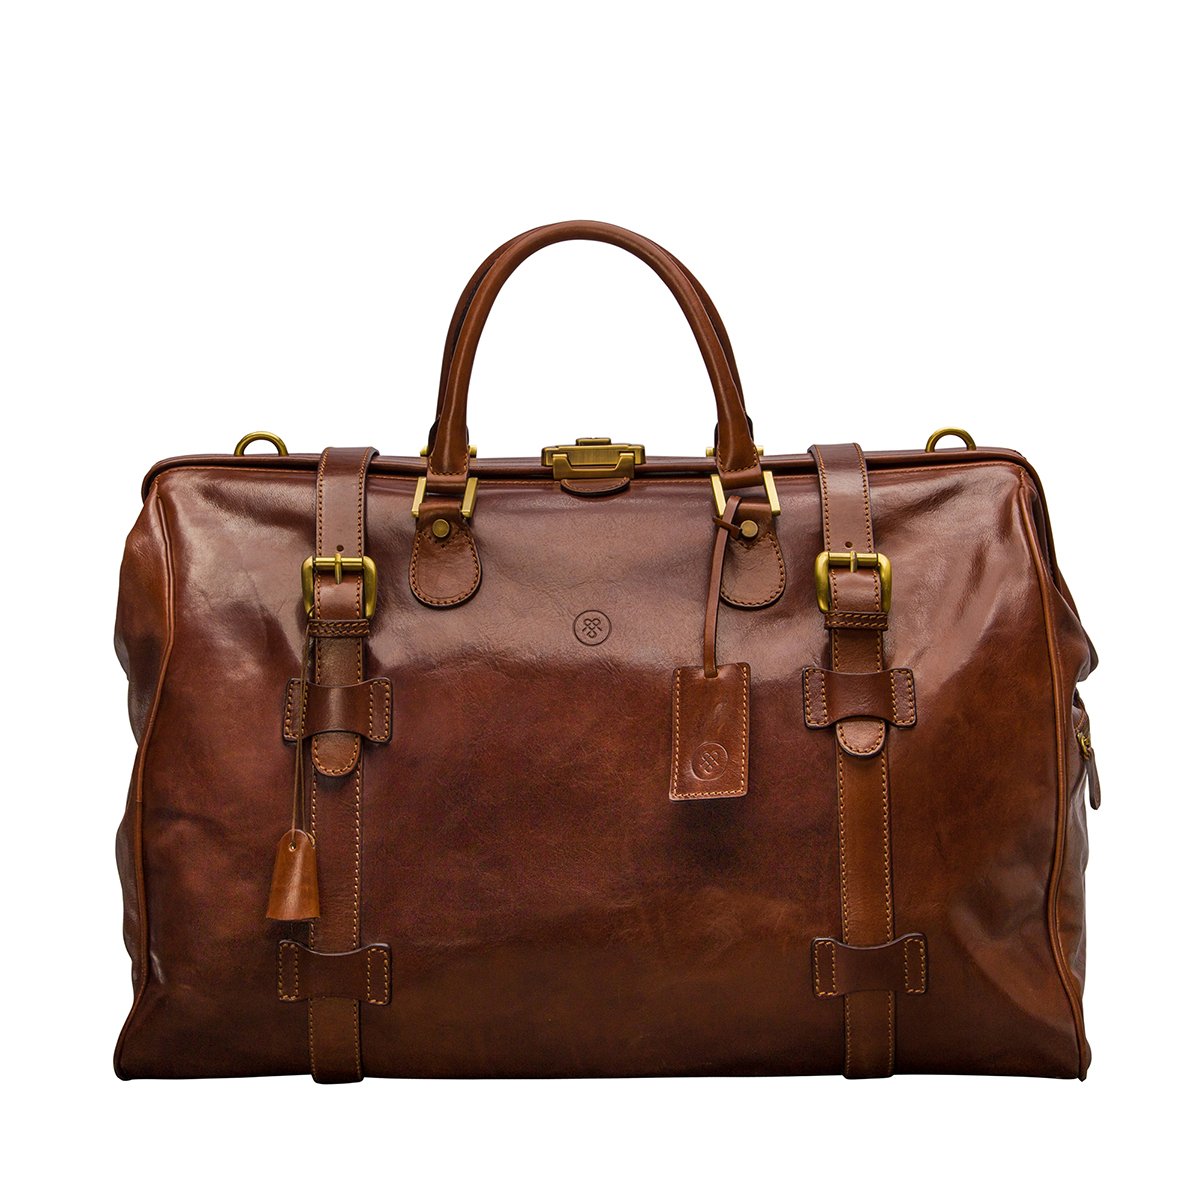 Gladstone Bag - All Fashion Bags